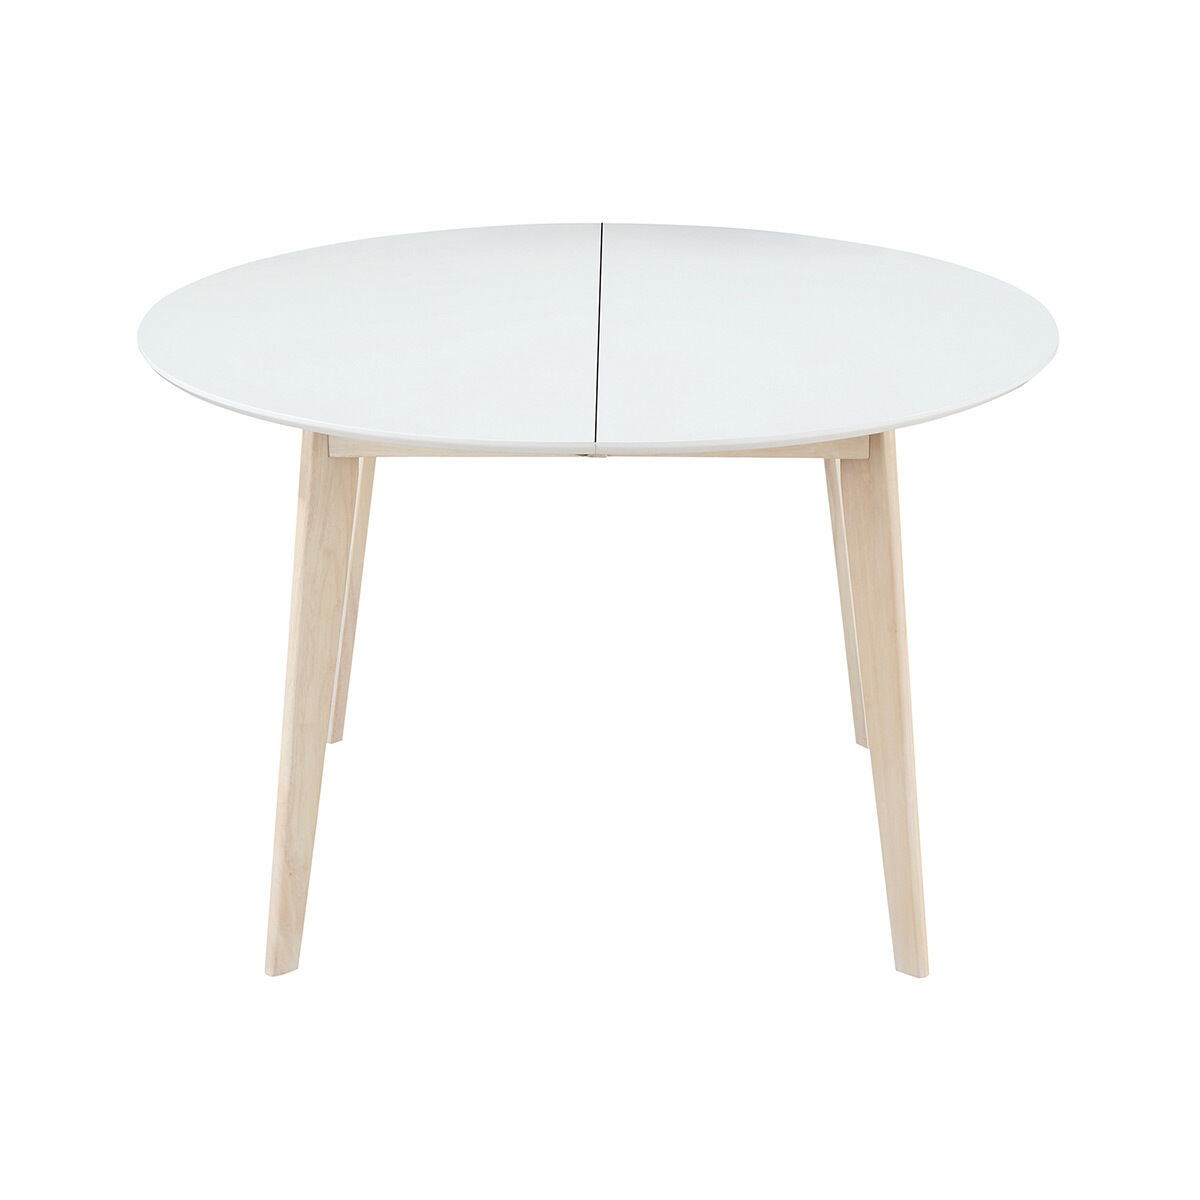 Miliboo Table à manger scandinave ronde extensible blanc et bois L120-150 cm LEENA